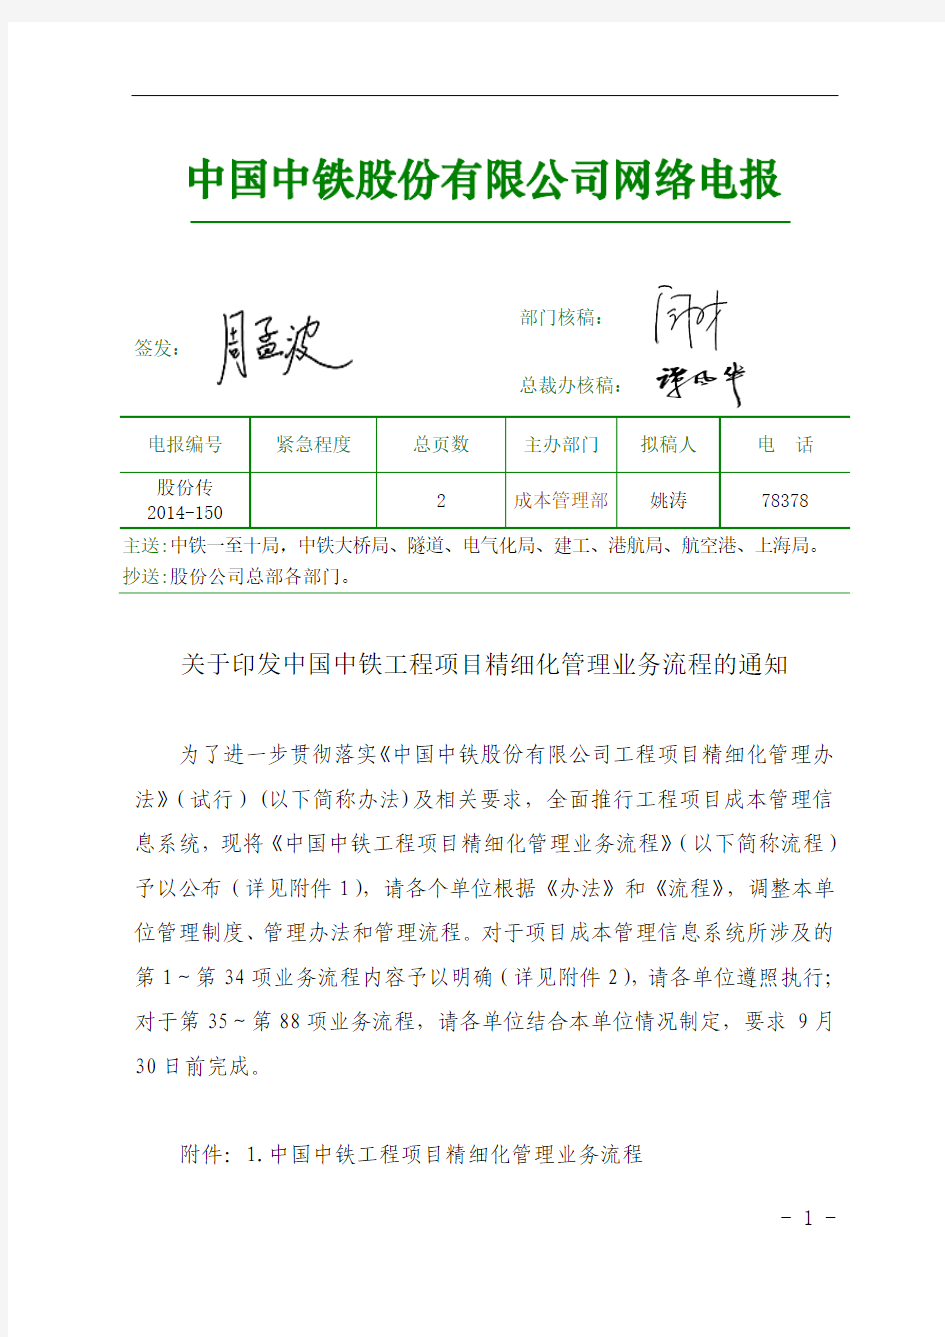 股份传[2014]150号关于印发中国中铁工程项目精细化管理业务流程的通知